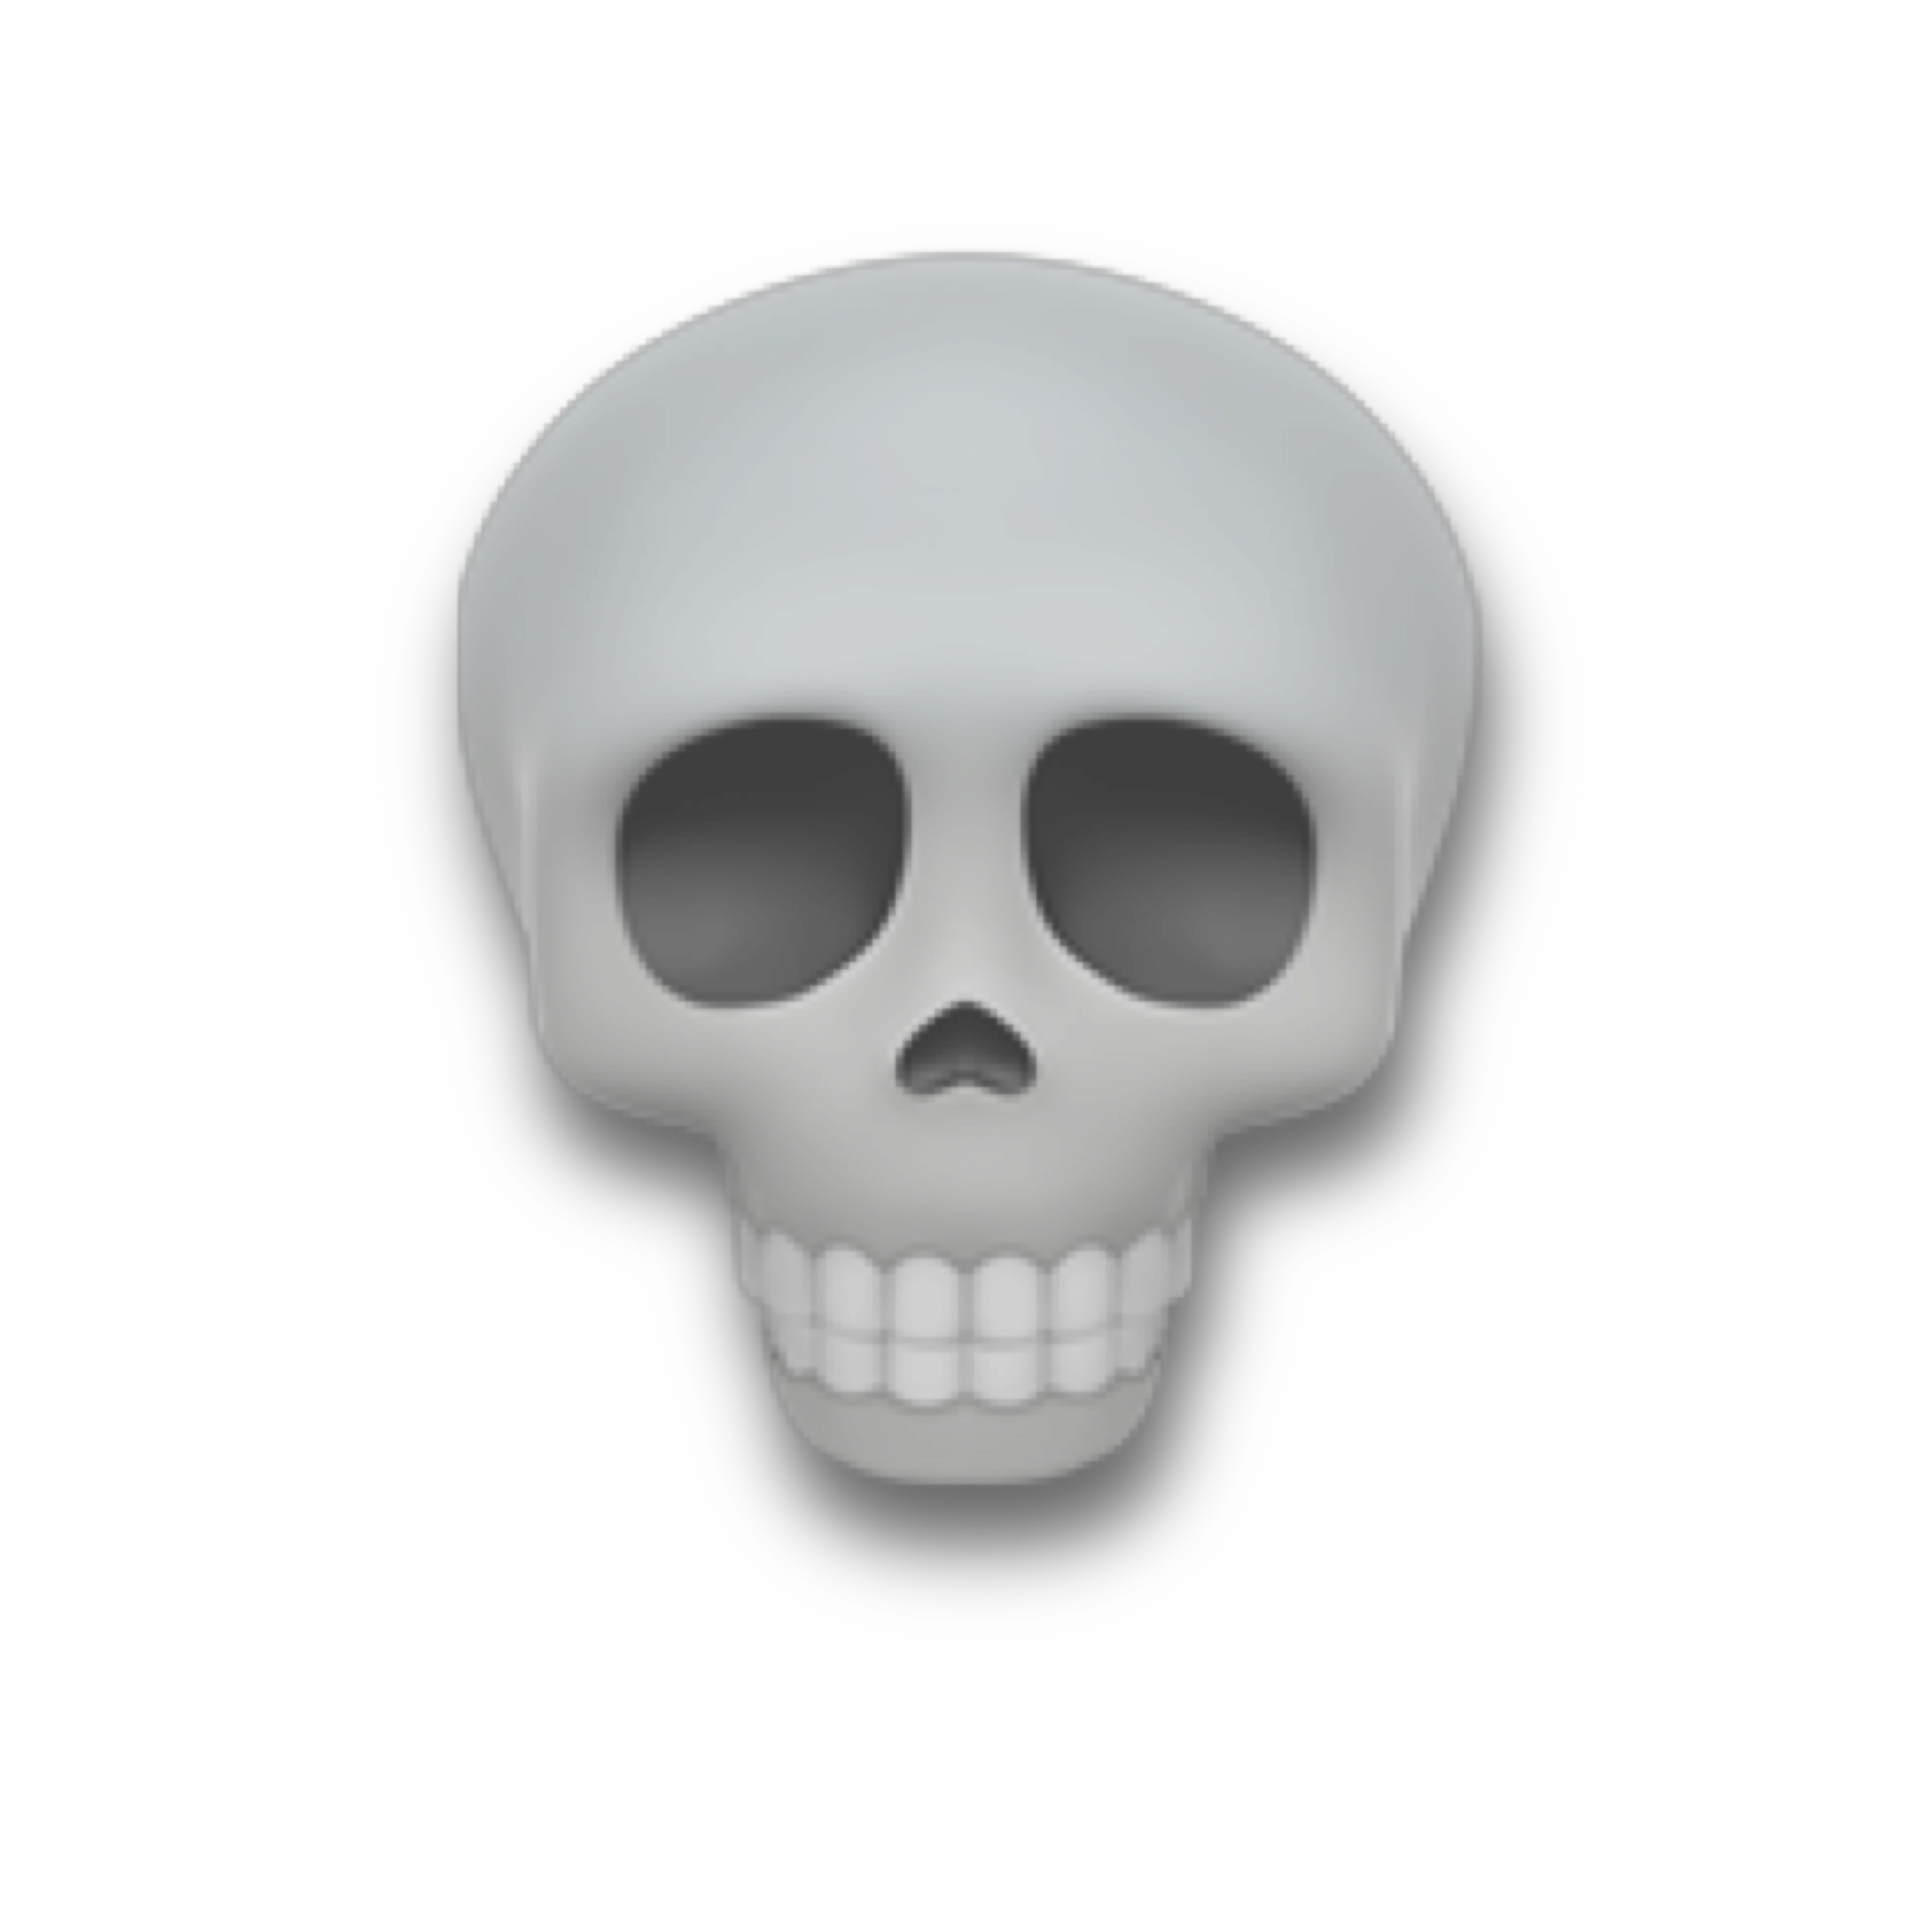 Skull Emoji PNG Image Transparent Background